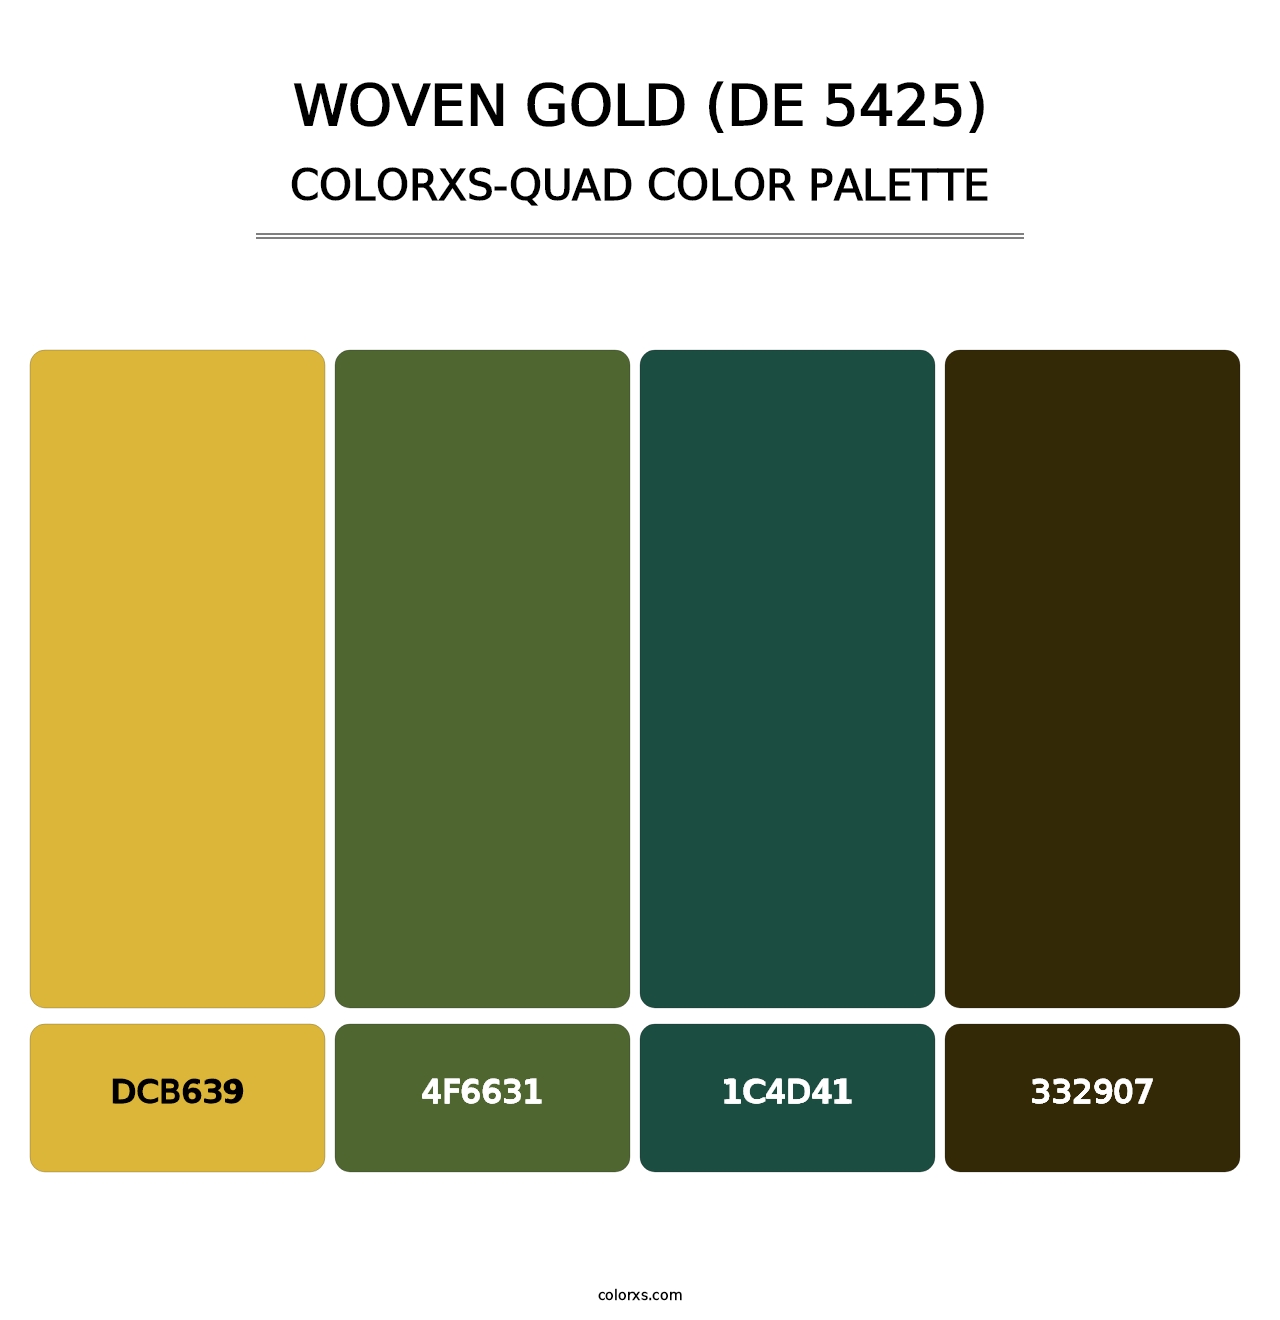 Woven Gold (DE 5425) - Colorxs Quad Palette